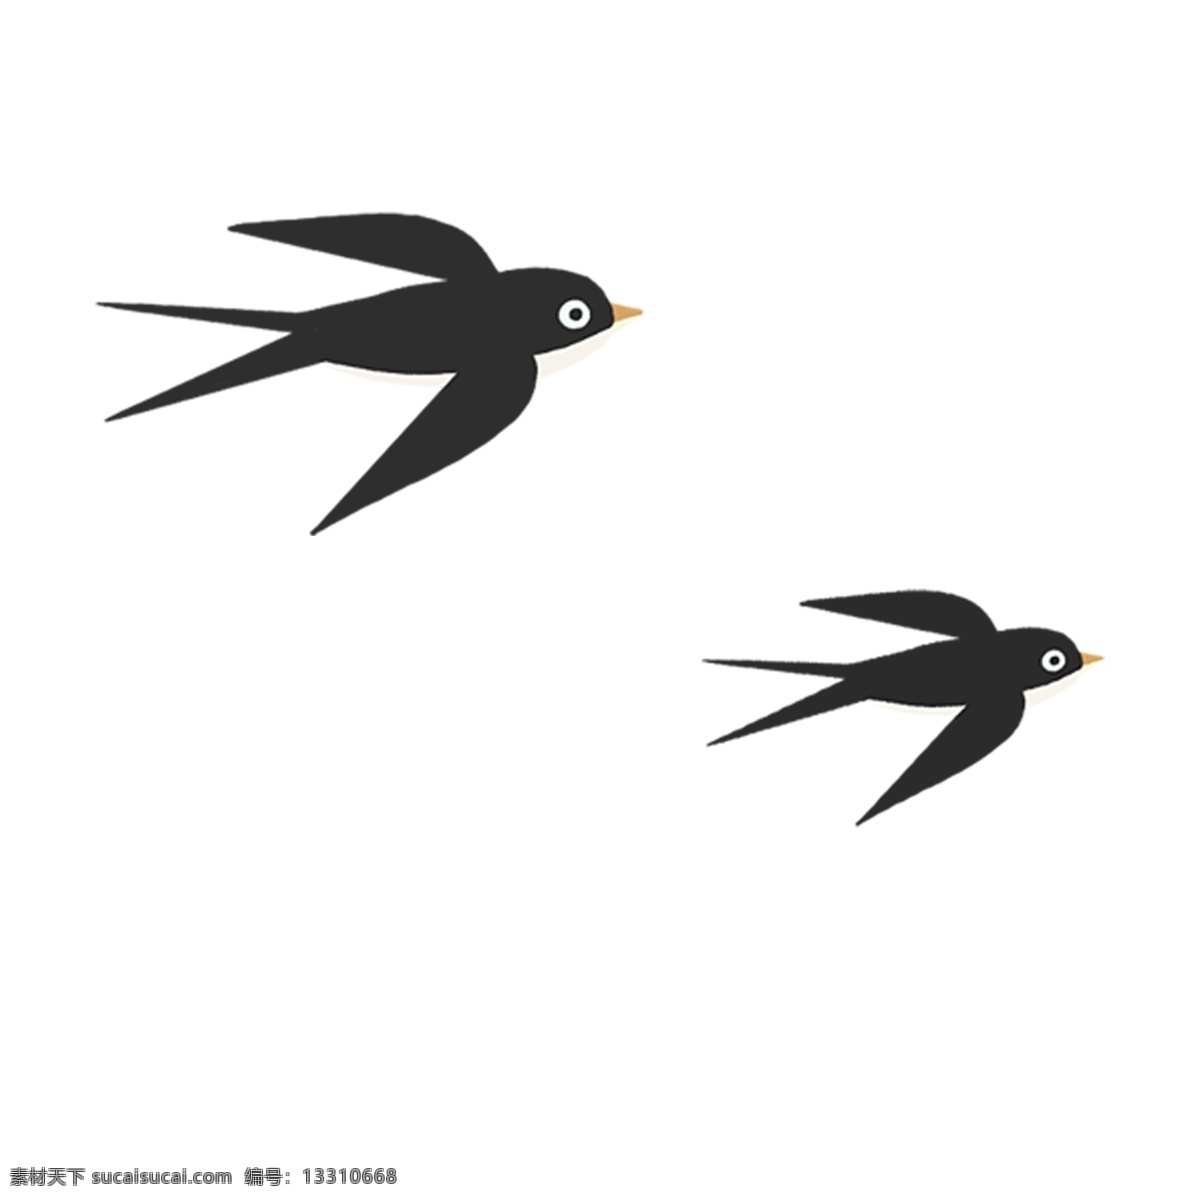 春天 两 只 可爱 小燕子 天空 中 飞 免 抠 图 燕子 鸟类 在天空中飞 免抠图 两只 益鸟 人类的朋友